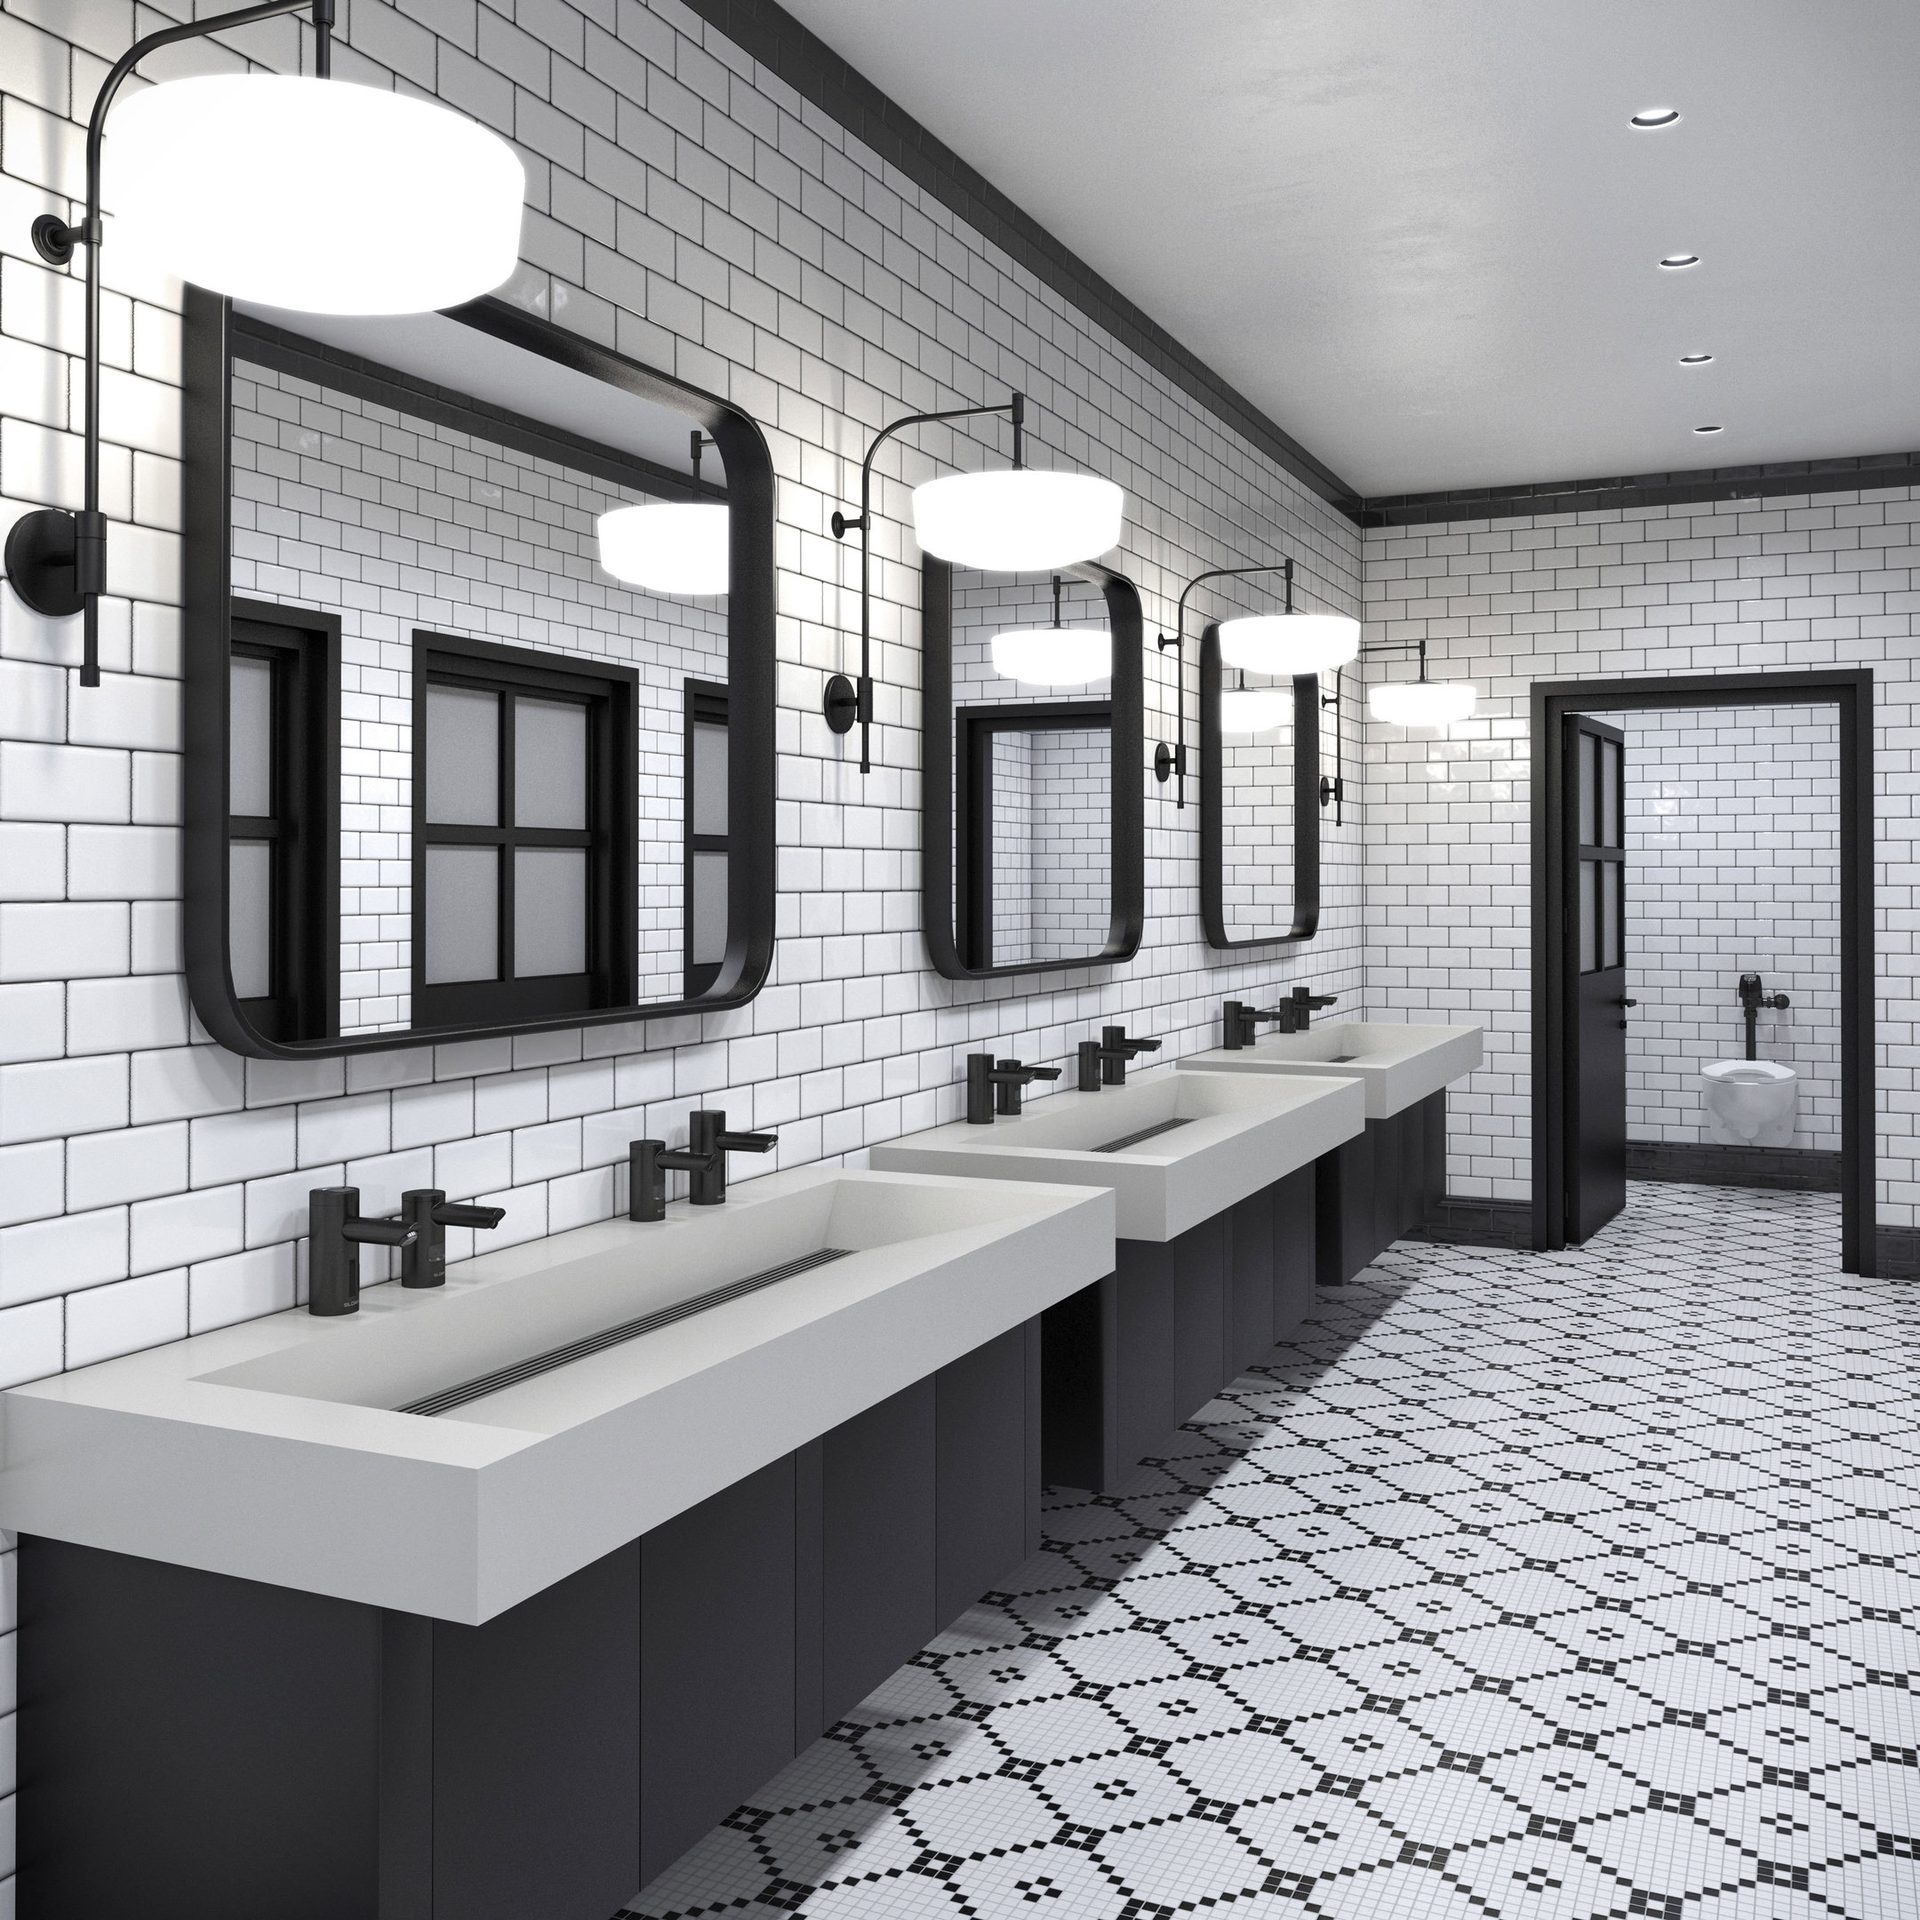 Plumbing fixture, Bathroom sink, Interior design, Mirror, Tap, Property, Architecture, Floor